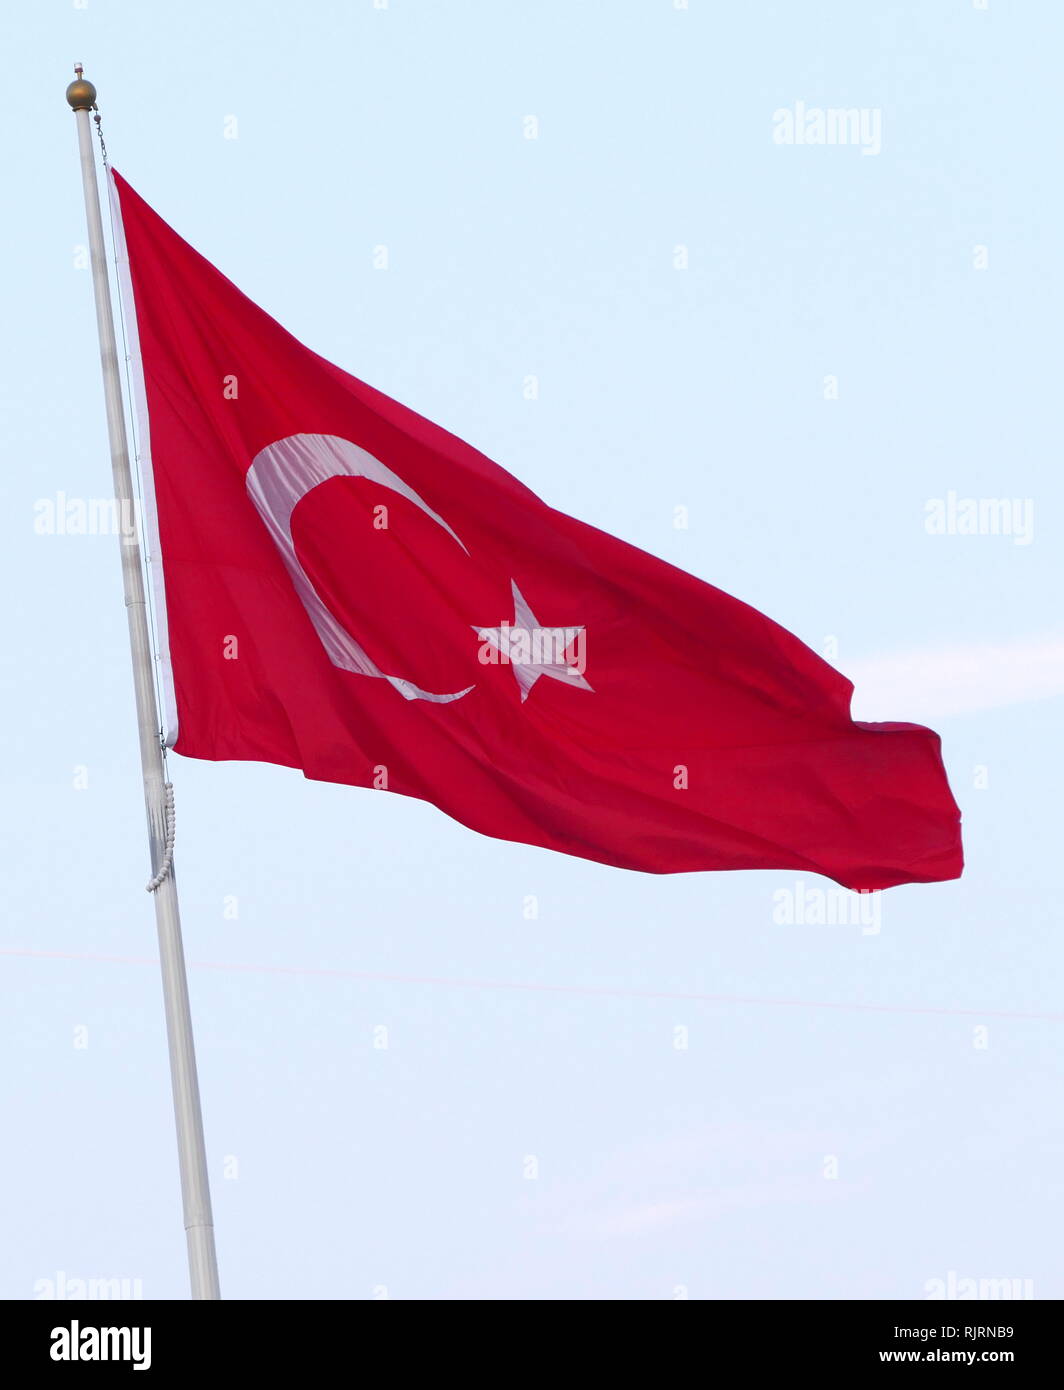 Die Flagge Der Republik Turkei Ist Eine Rote Flagge Mit Einem Weissen Stern Und Halbmond Die